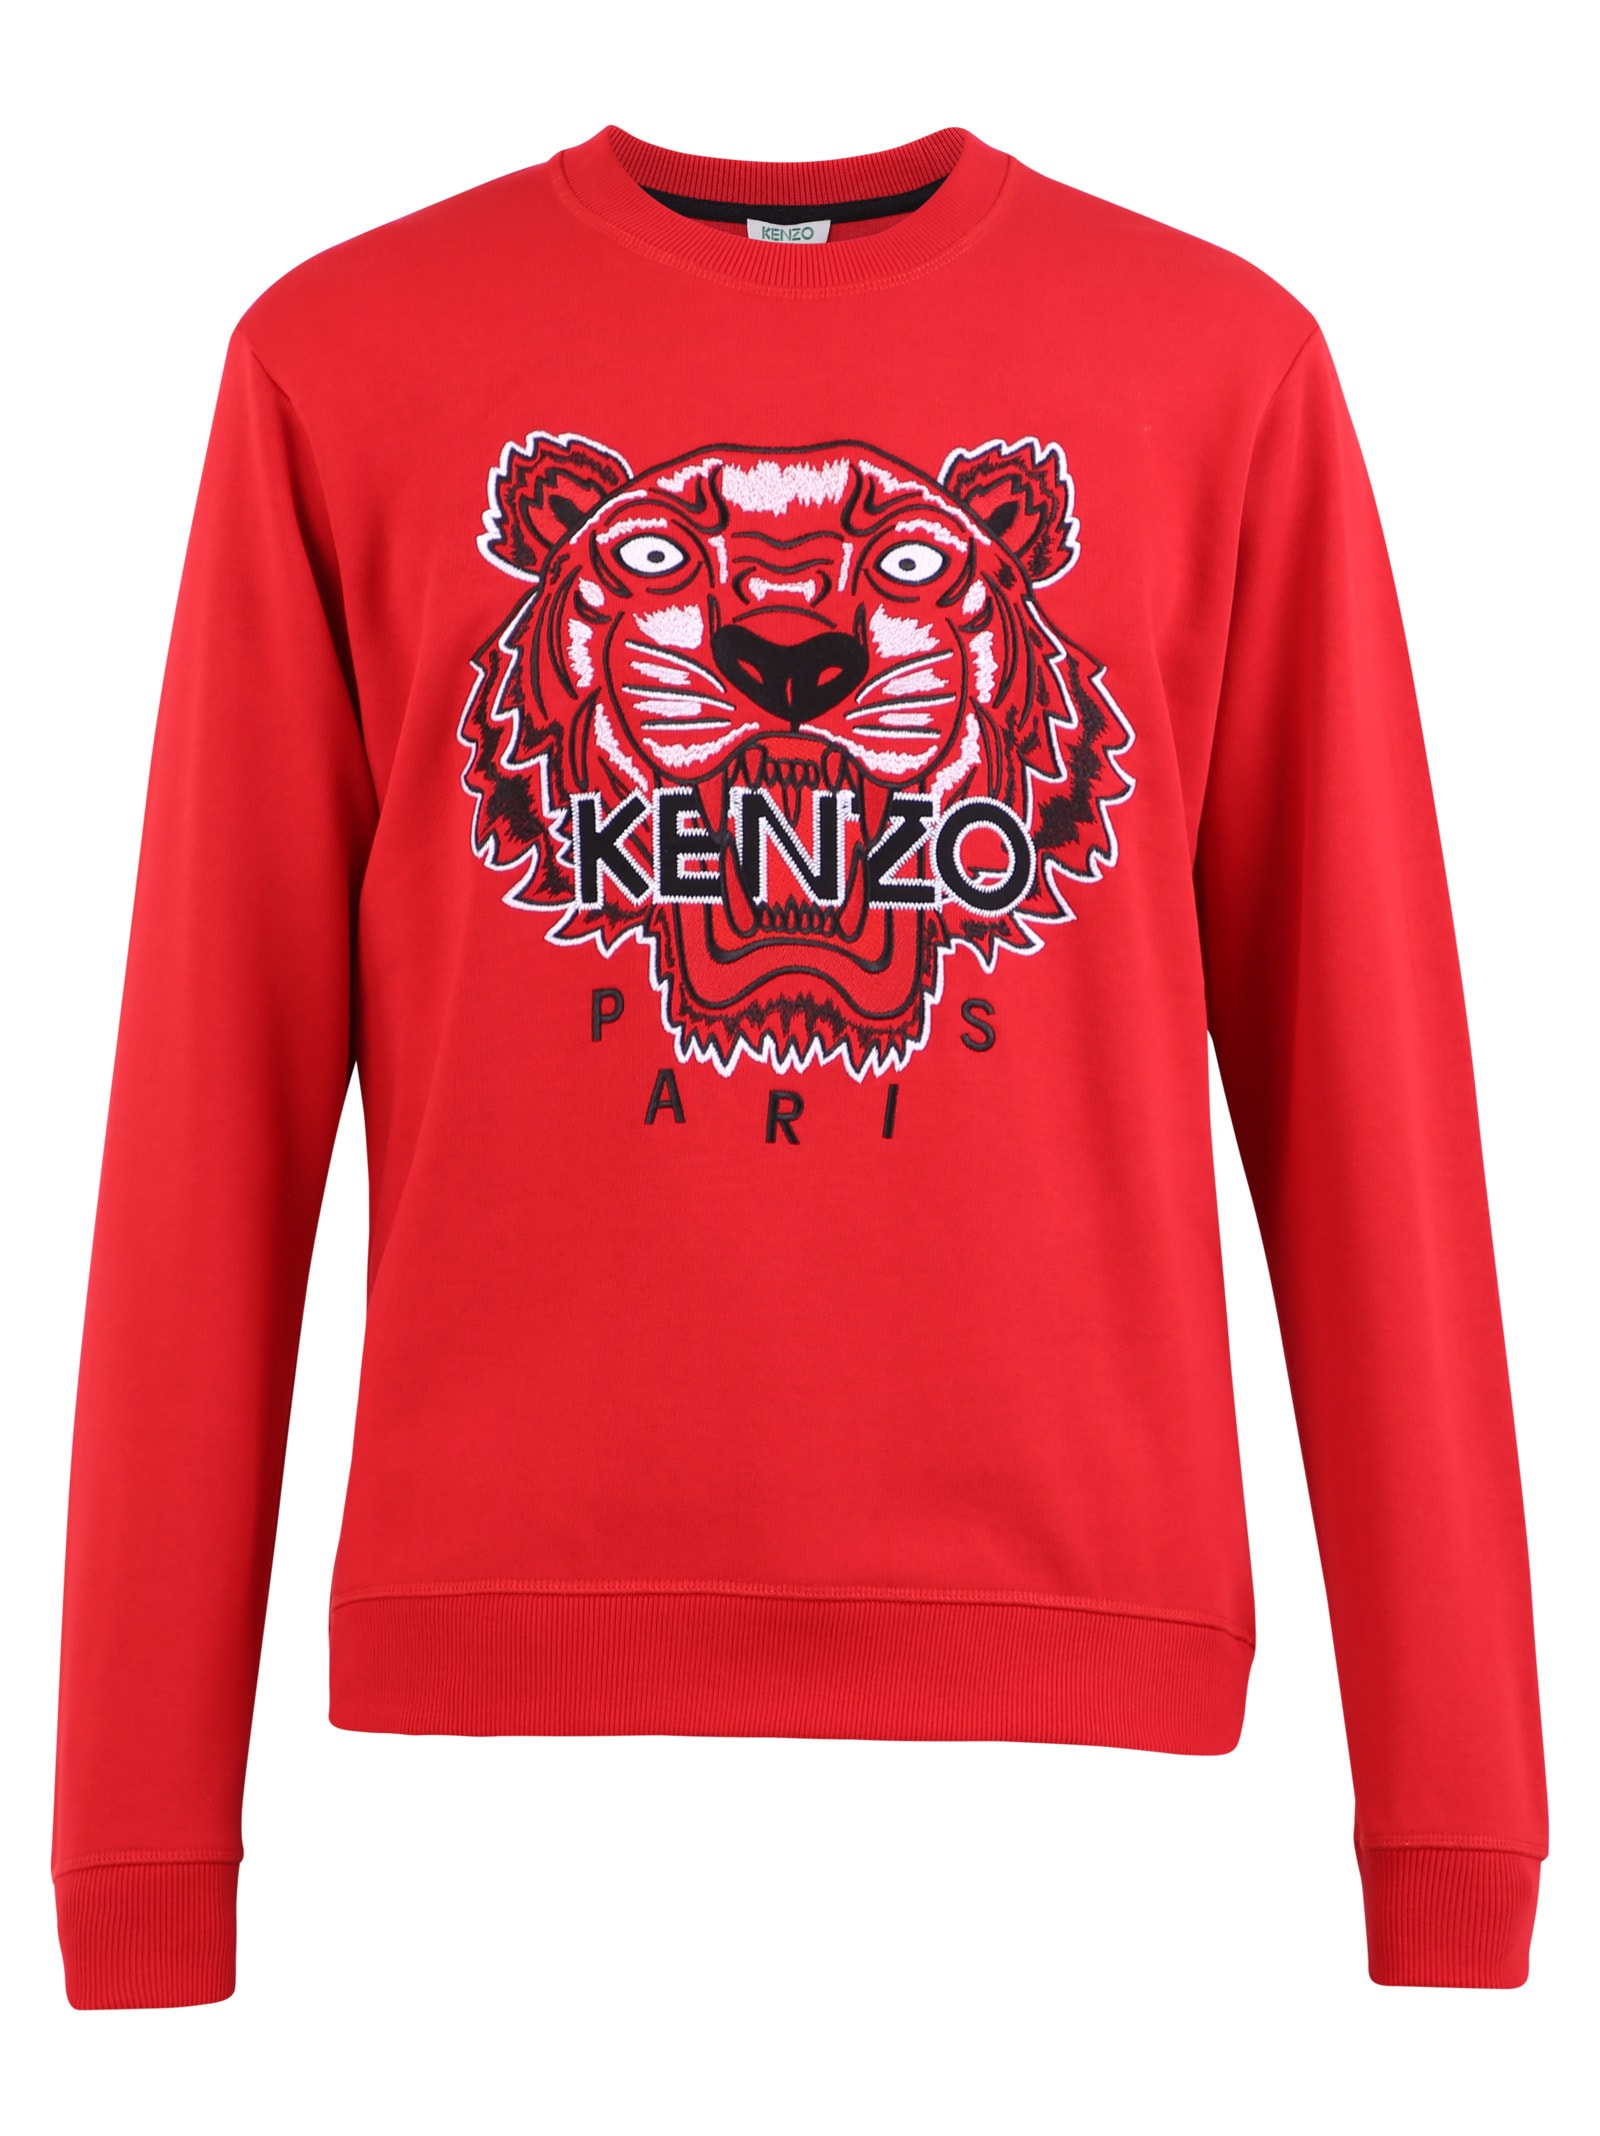 kenzo shirt red